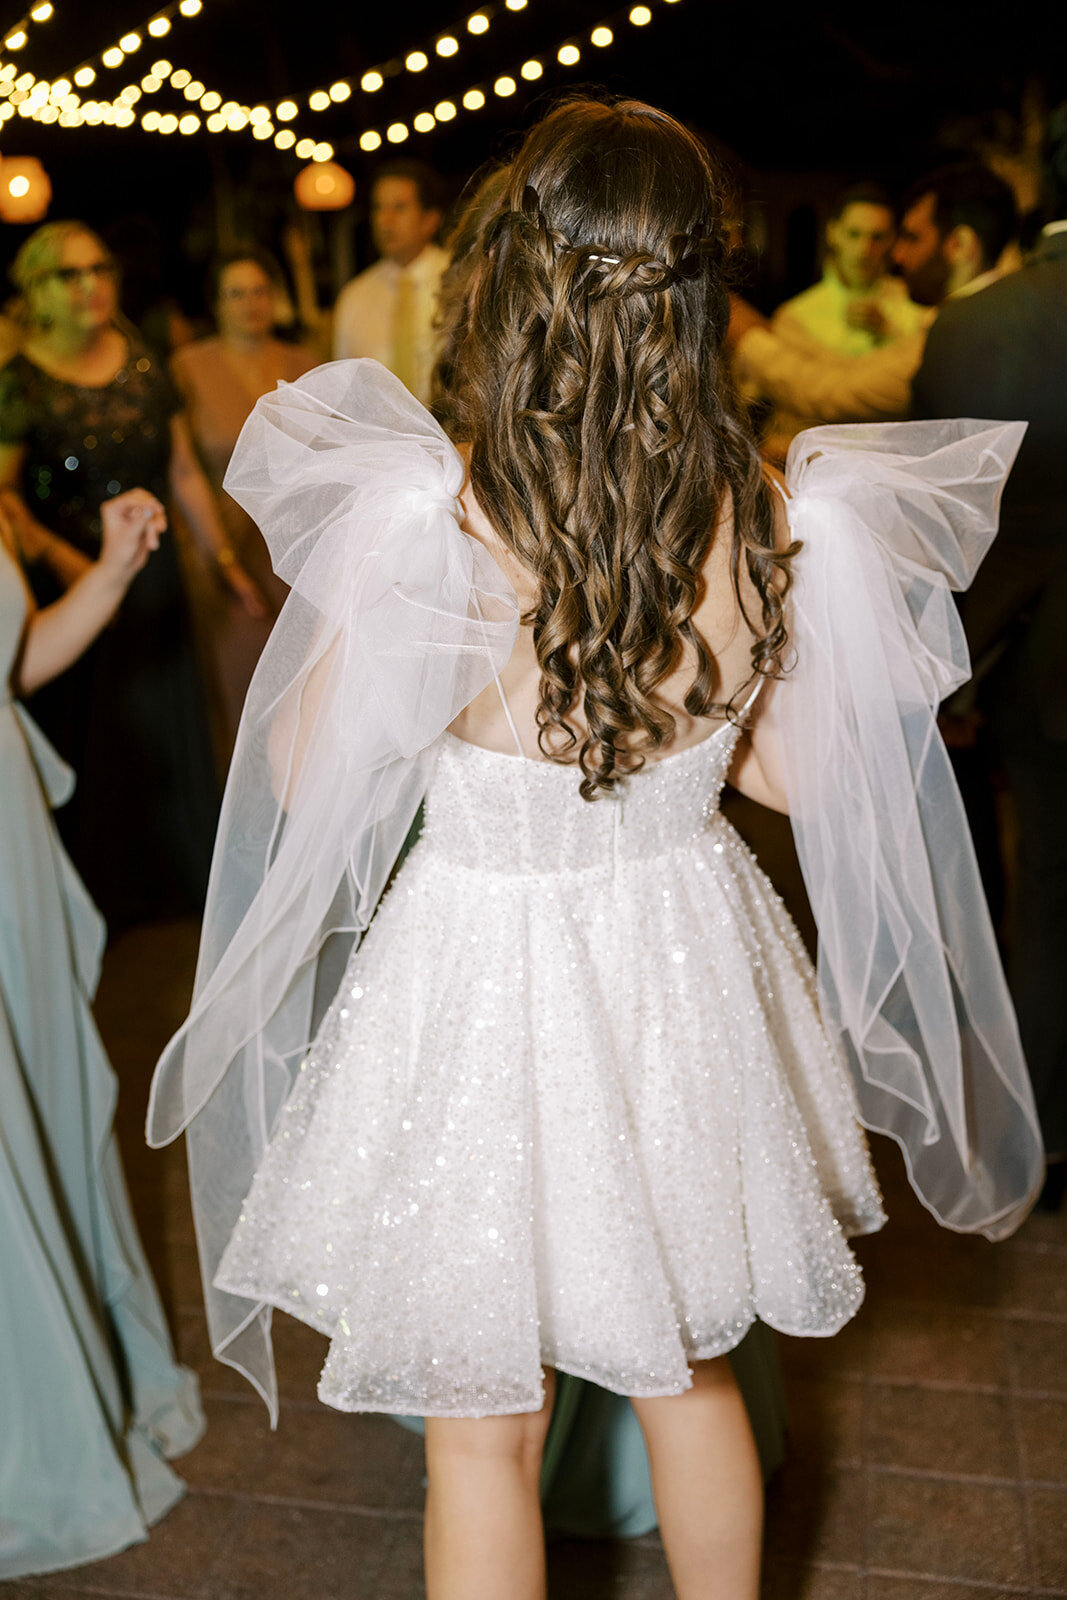 CORNELIA ZAISS PHOTOGRAPHY COURTNEY + ANDREW WEDDING 1602_websize